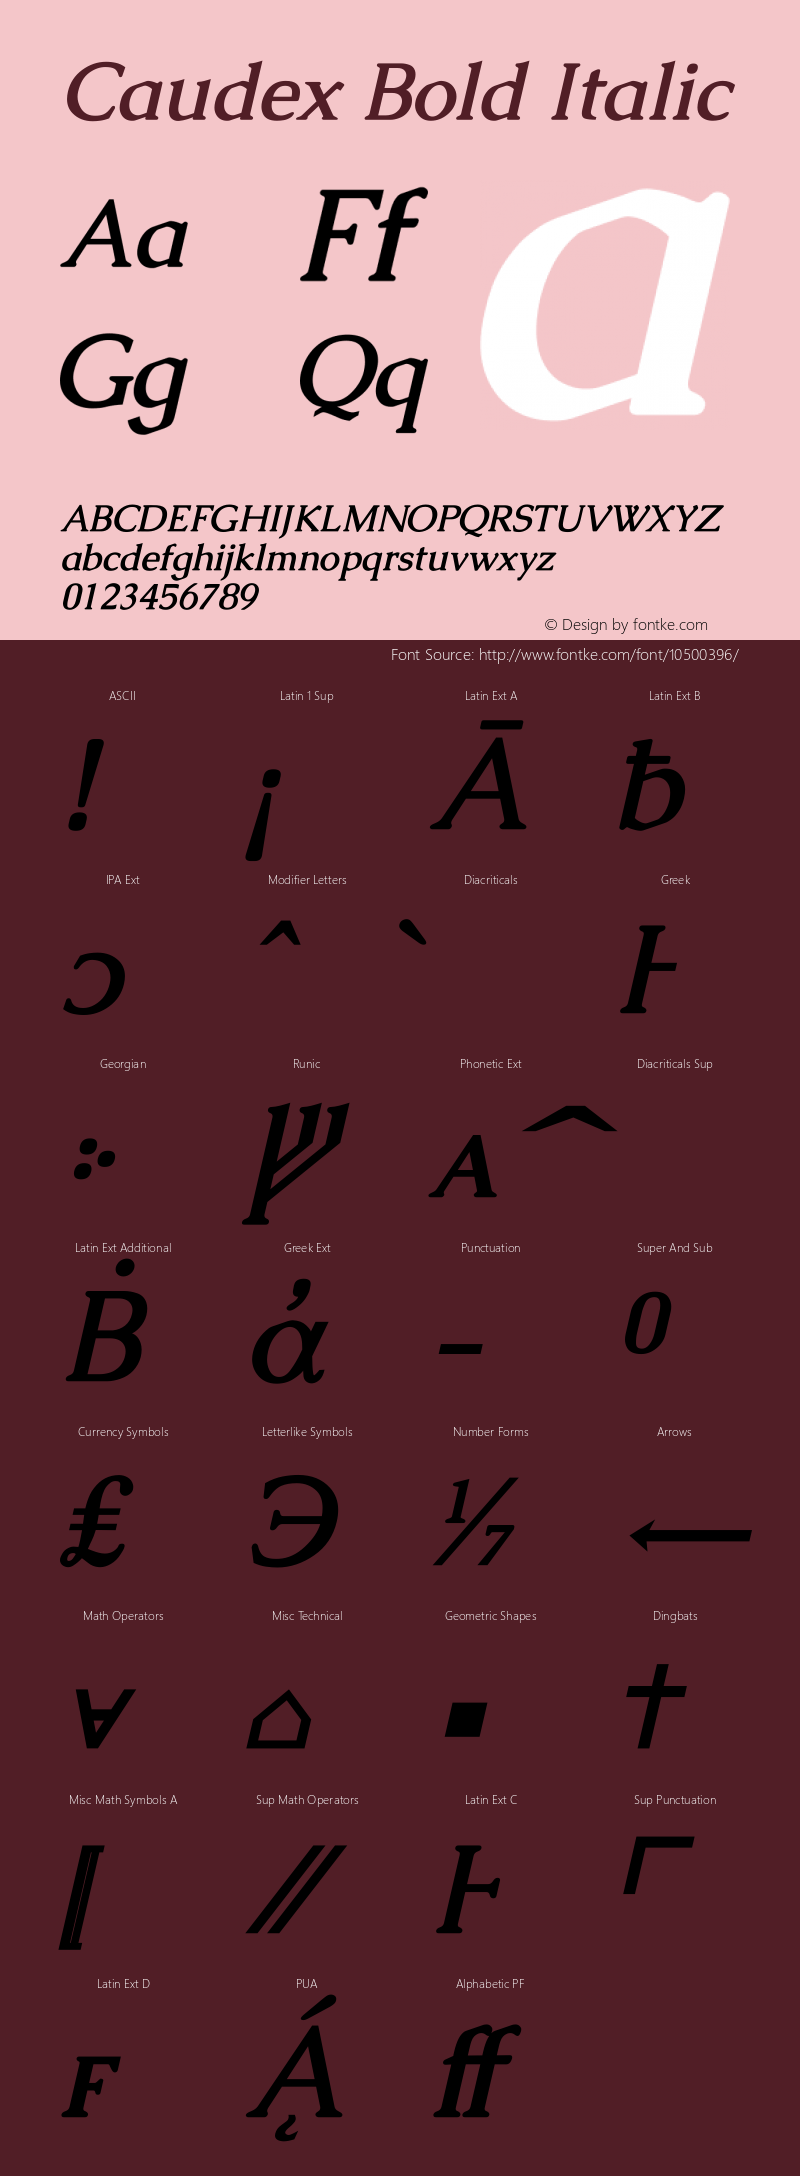 Caudex Bold Italic Version 1.01 Font Sample